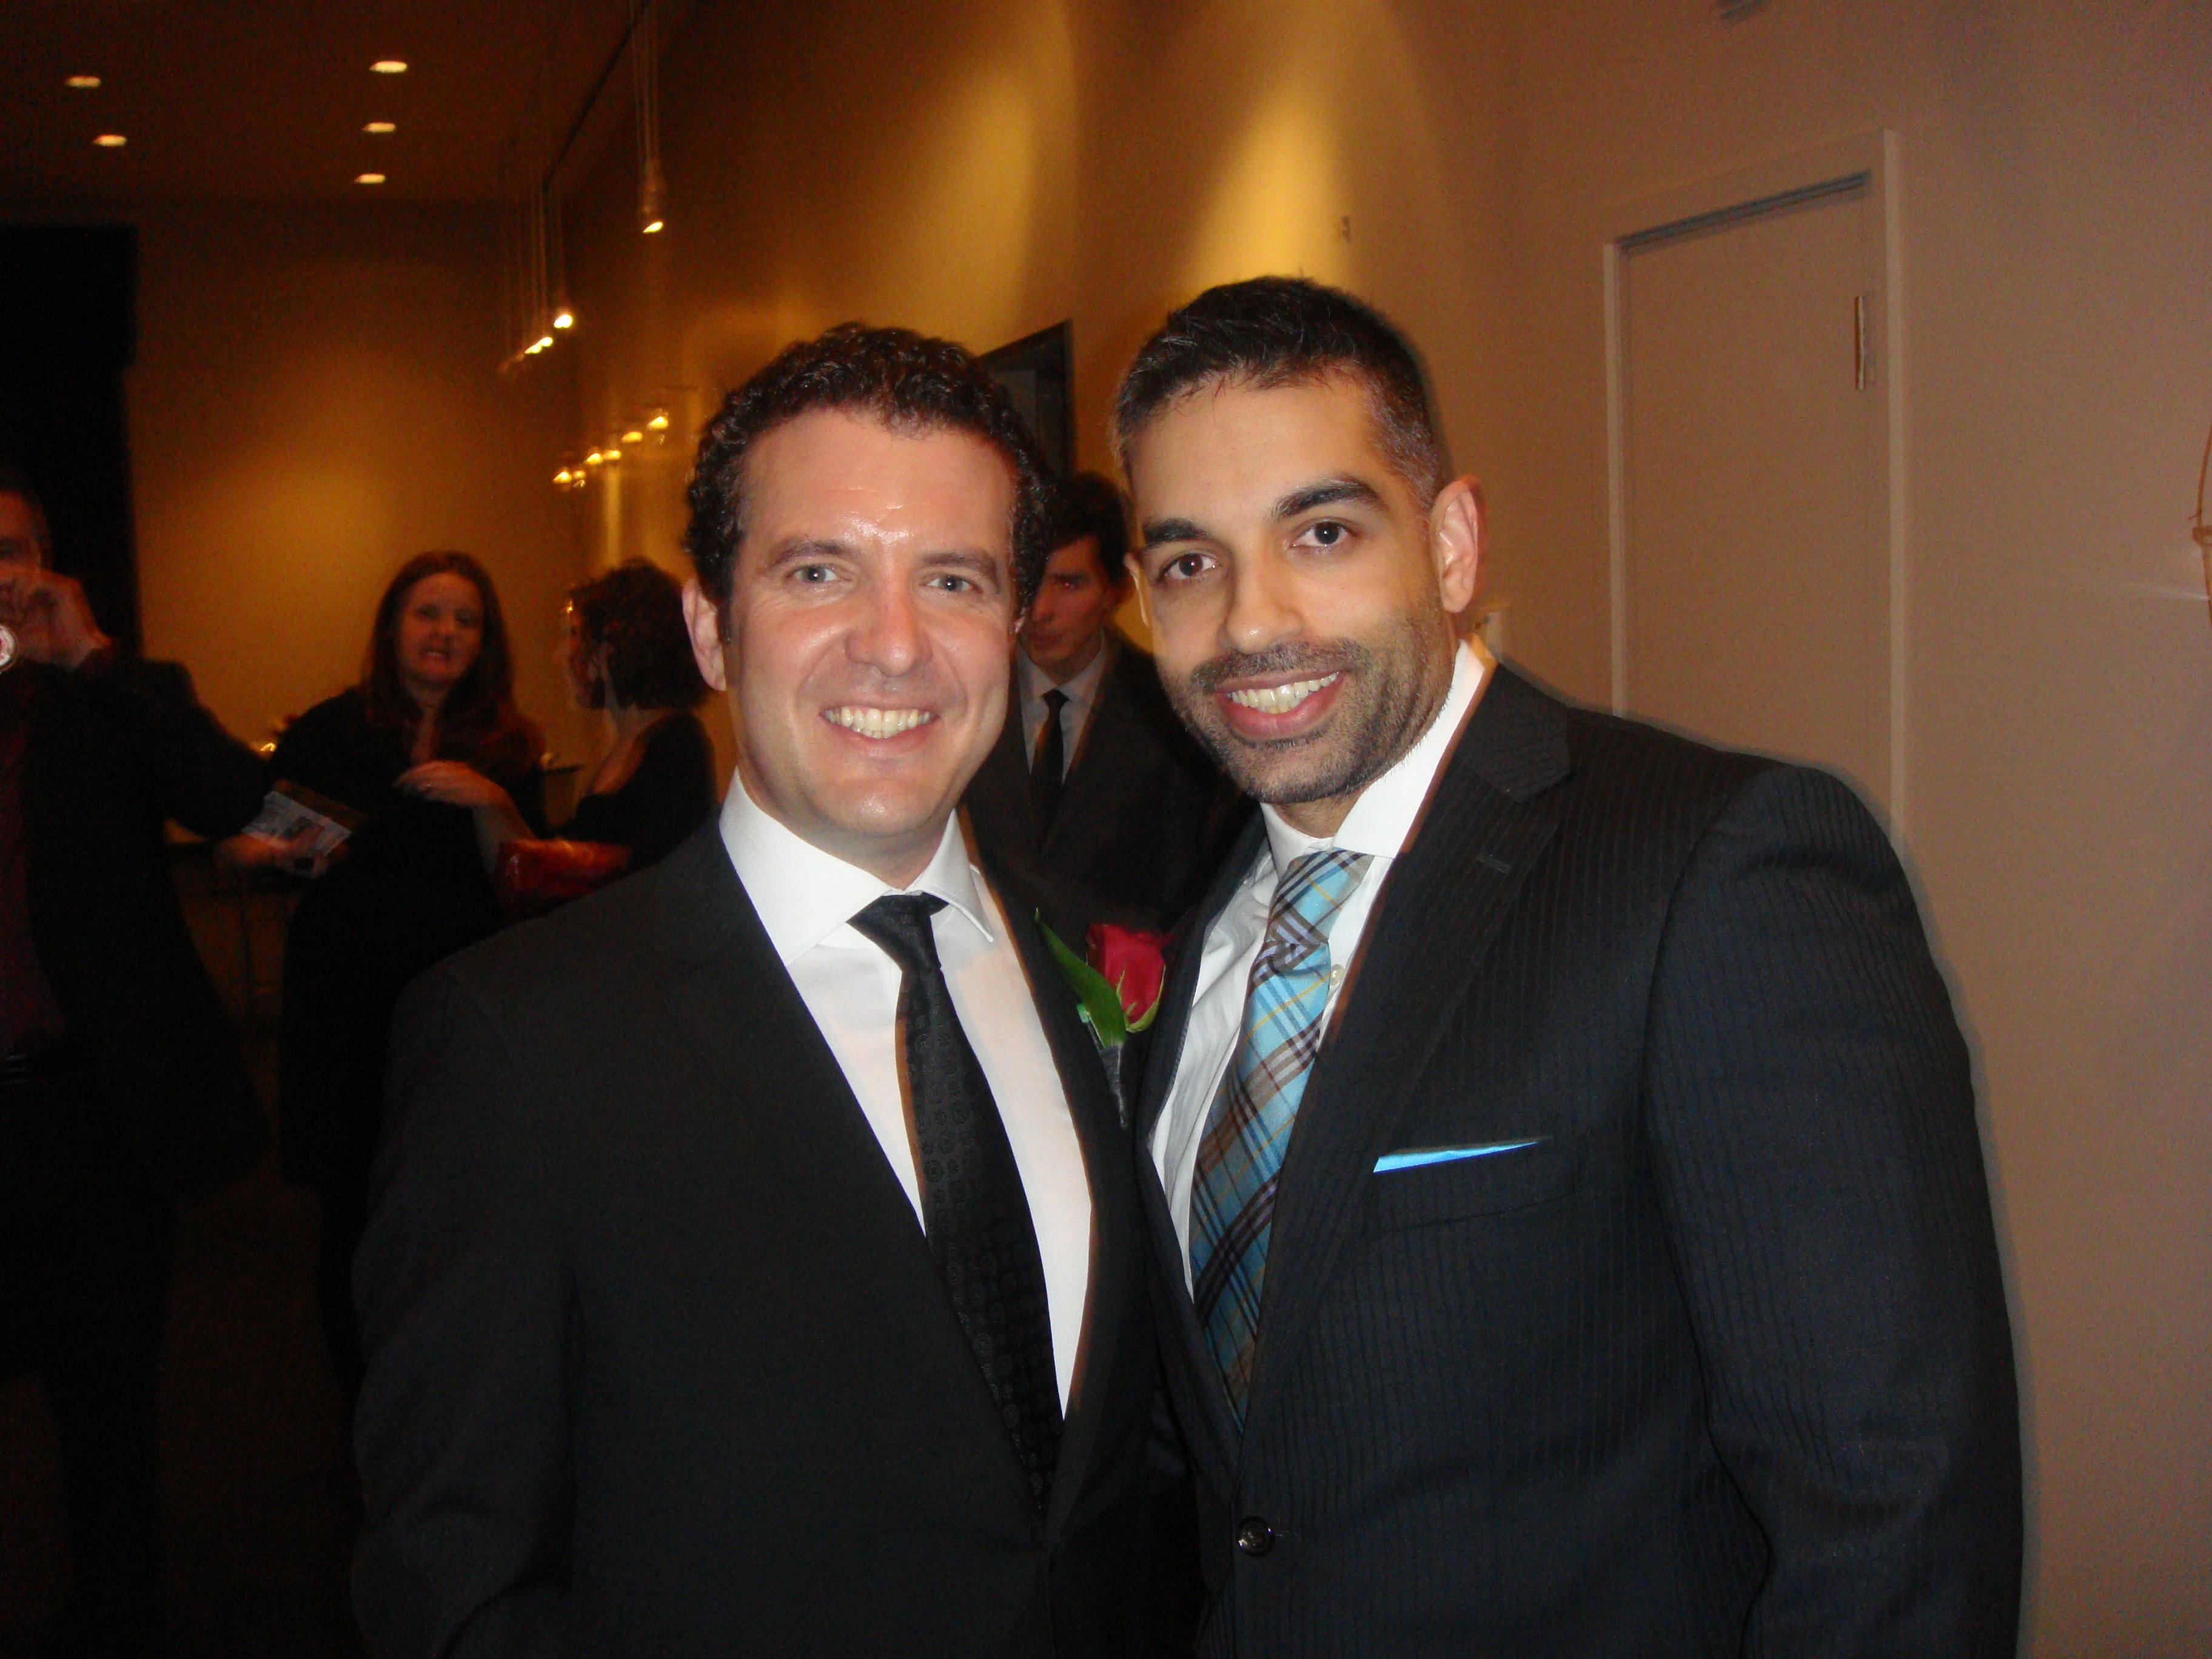 With Rick Mercer (ACTRA Awards 2012 - Toronto)